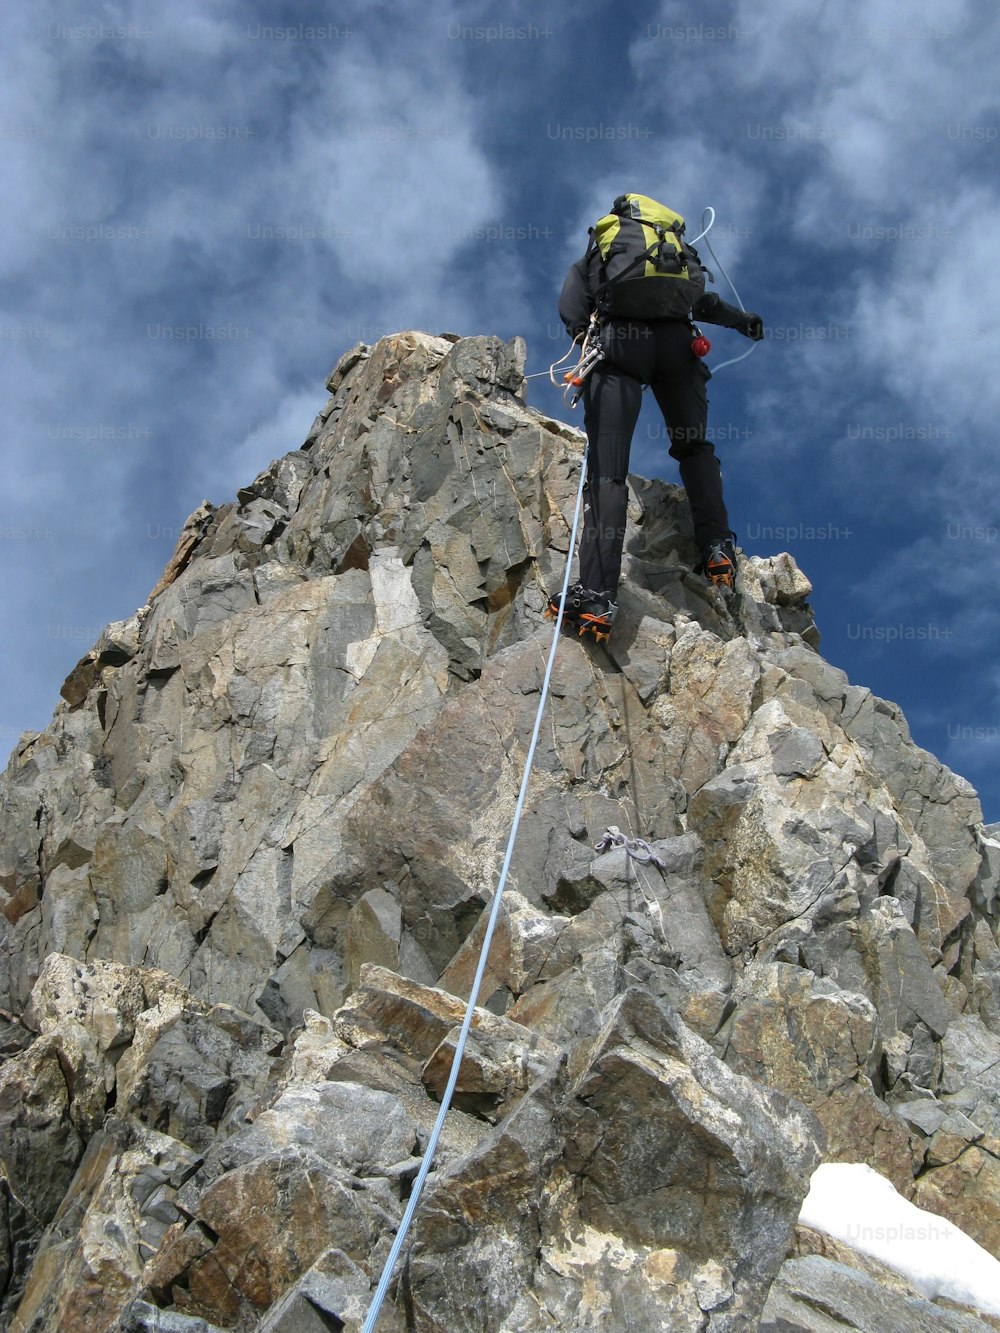 alpiniste descendant en rappel sur la longue et étroite crête du Biancograt dans les Alpes suisses en direction du haut sommet isolé du Piz Bernina